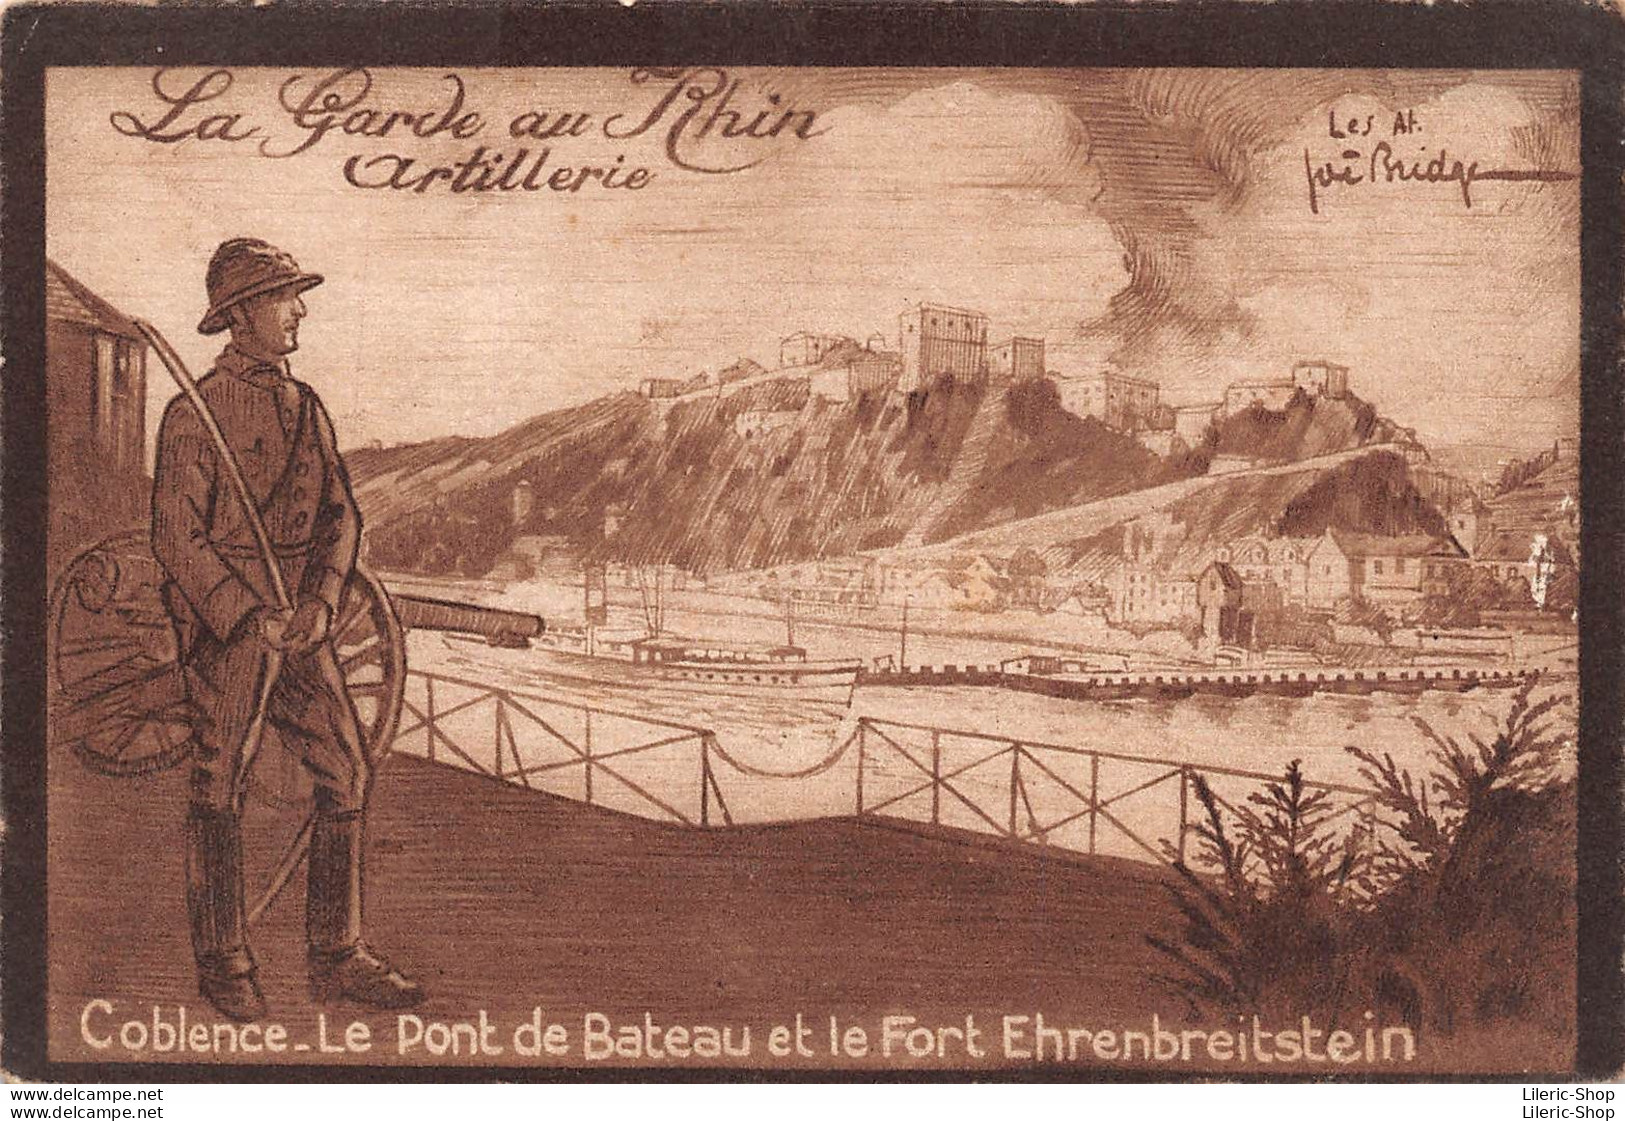 La Garde Au Rhin Artillerie Coblence. Le Pont De Bateau Et Le Fort Ehrenbreitstein Illustrateur Joë BRIDGE - Kazerne